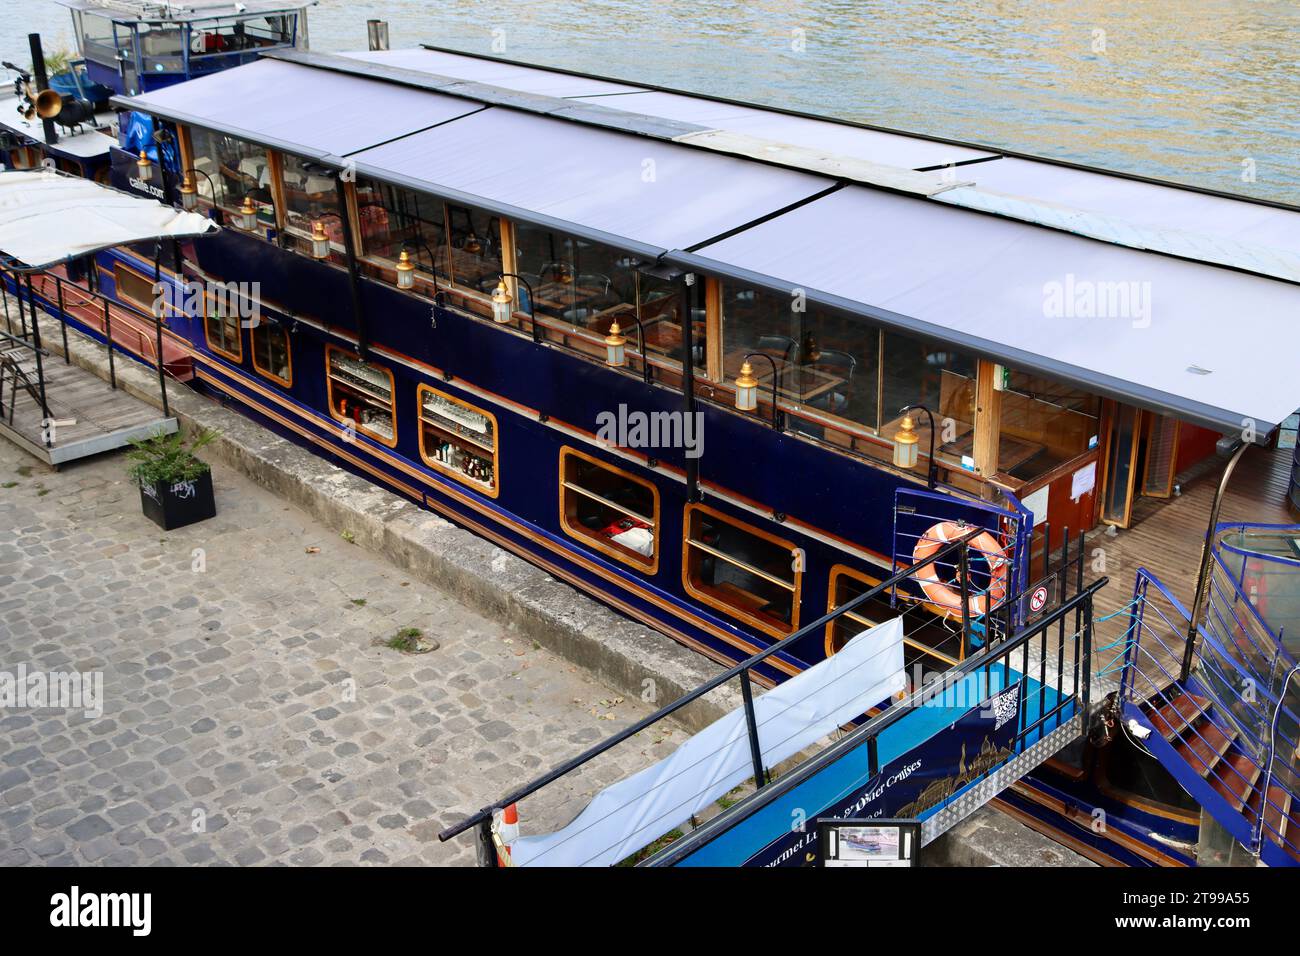 Le Calife, cruising restaurant docked at Port des Saints-Pères on Rive Gauche in Paris, France Stock Photo